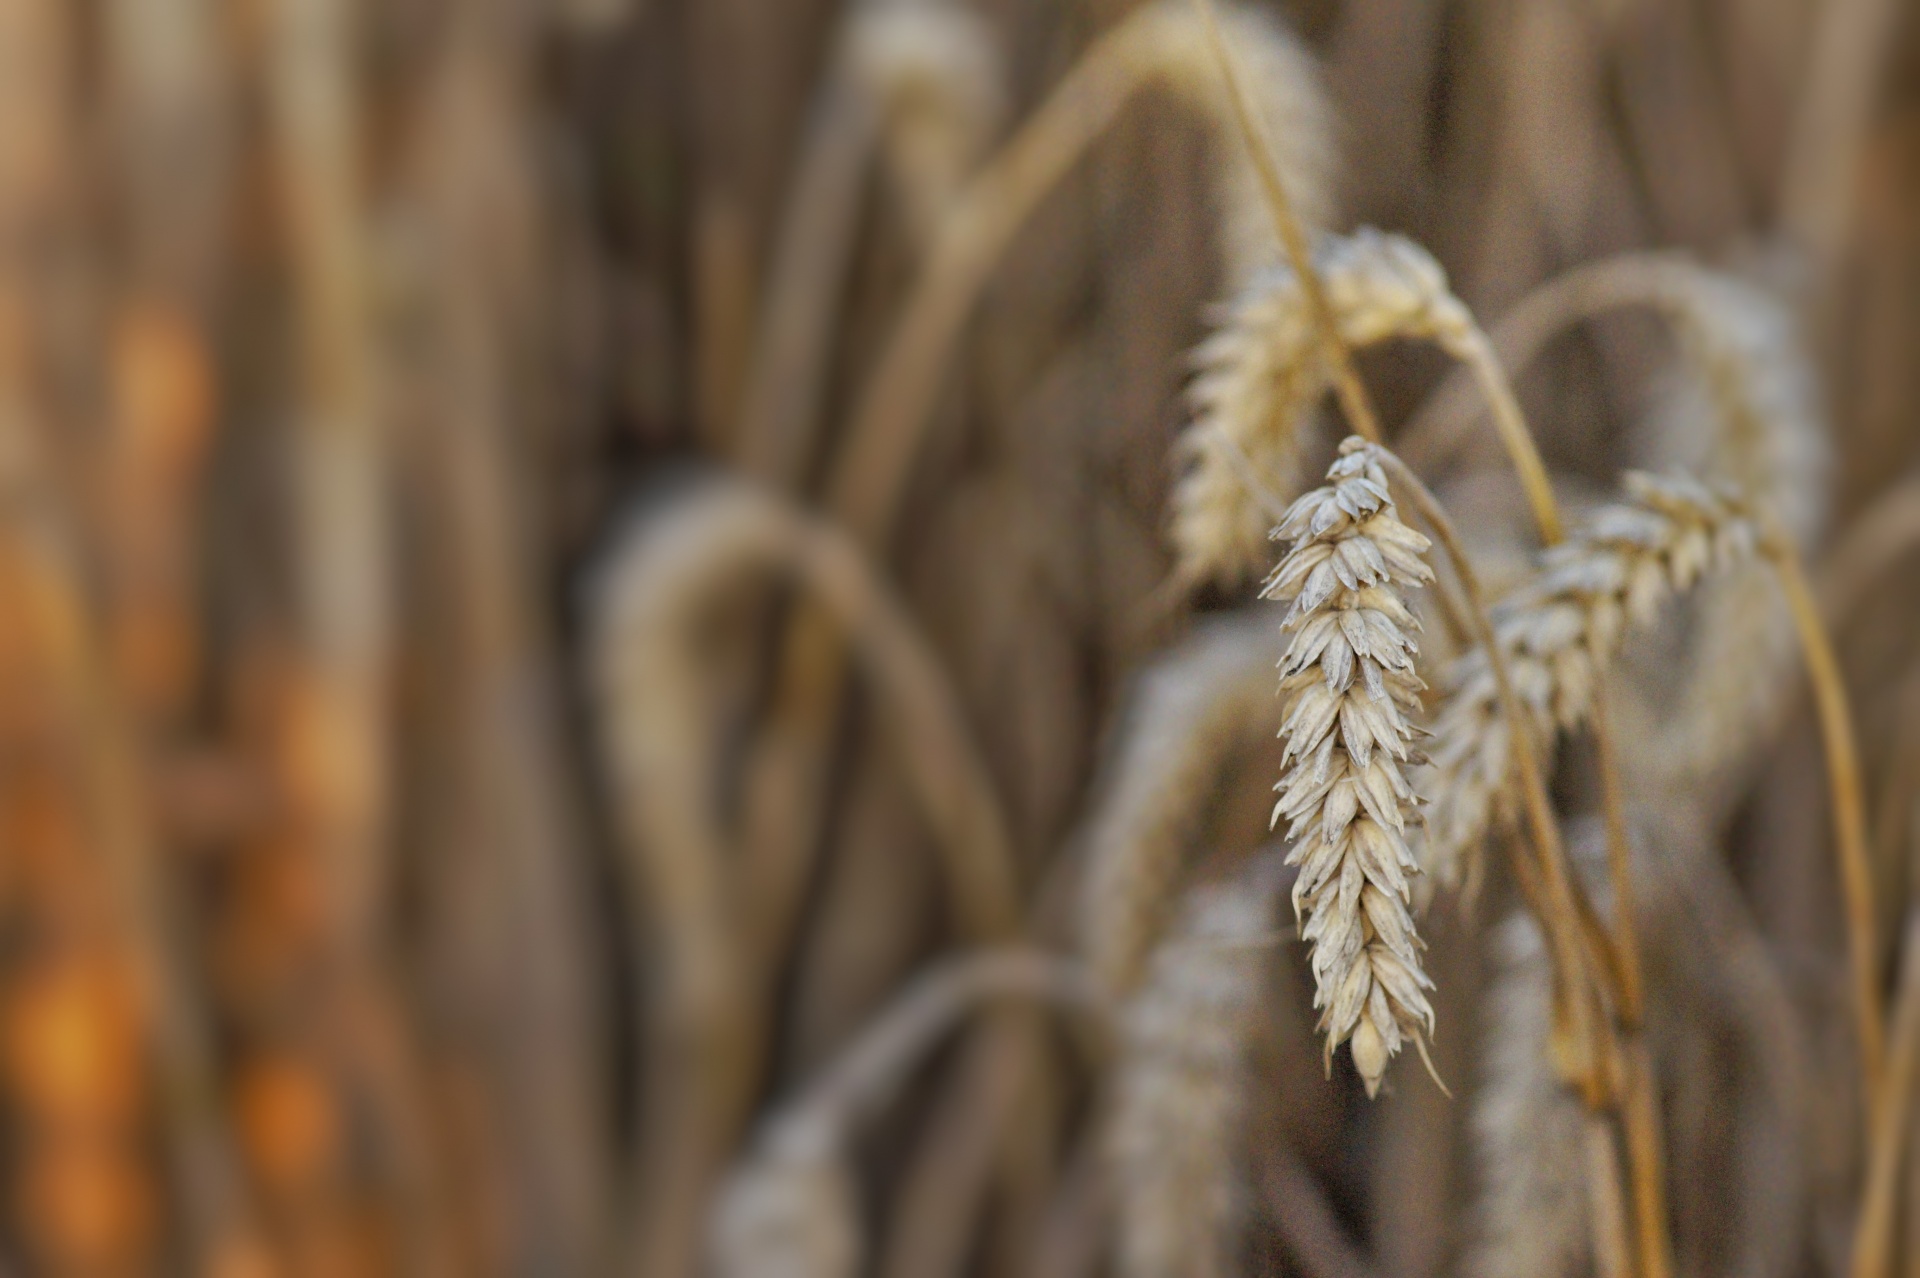 Cevada colheita de trigo